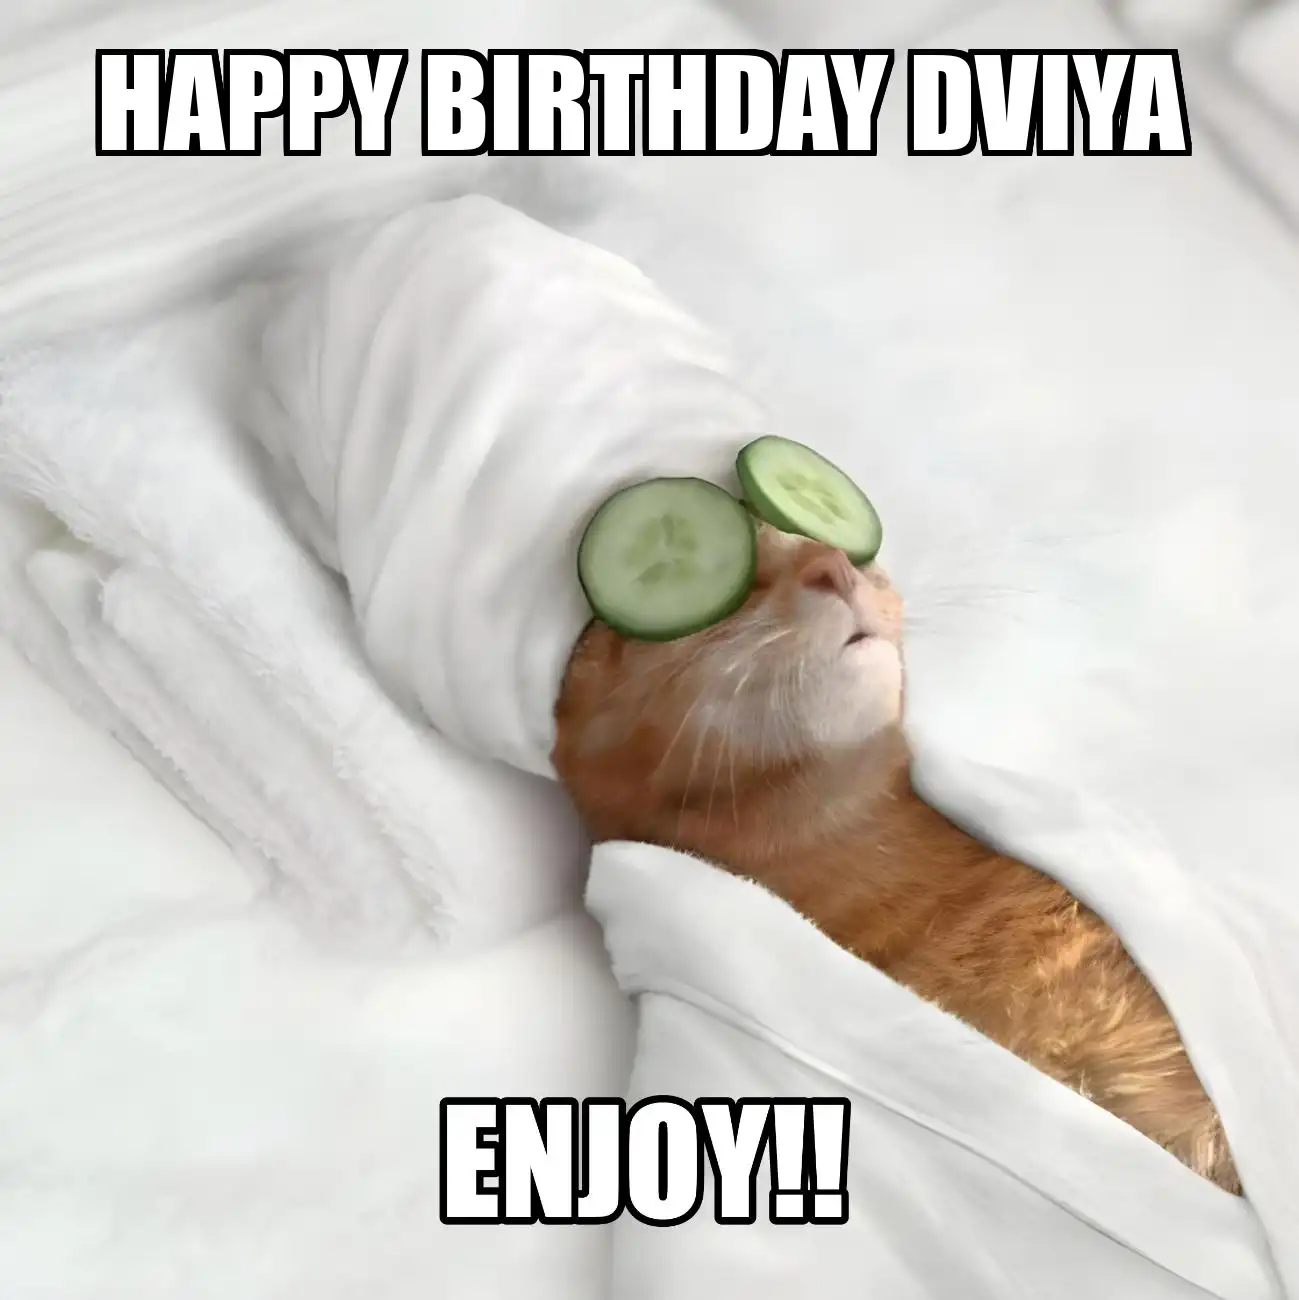 Happy Birthday Dviya Enjoy Cat Meme